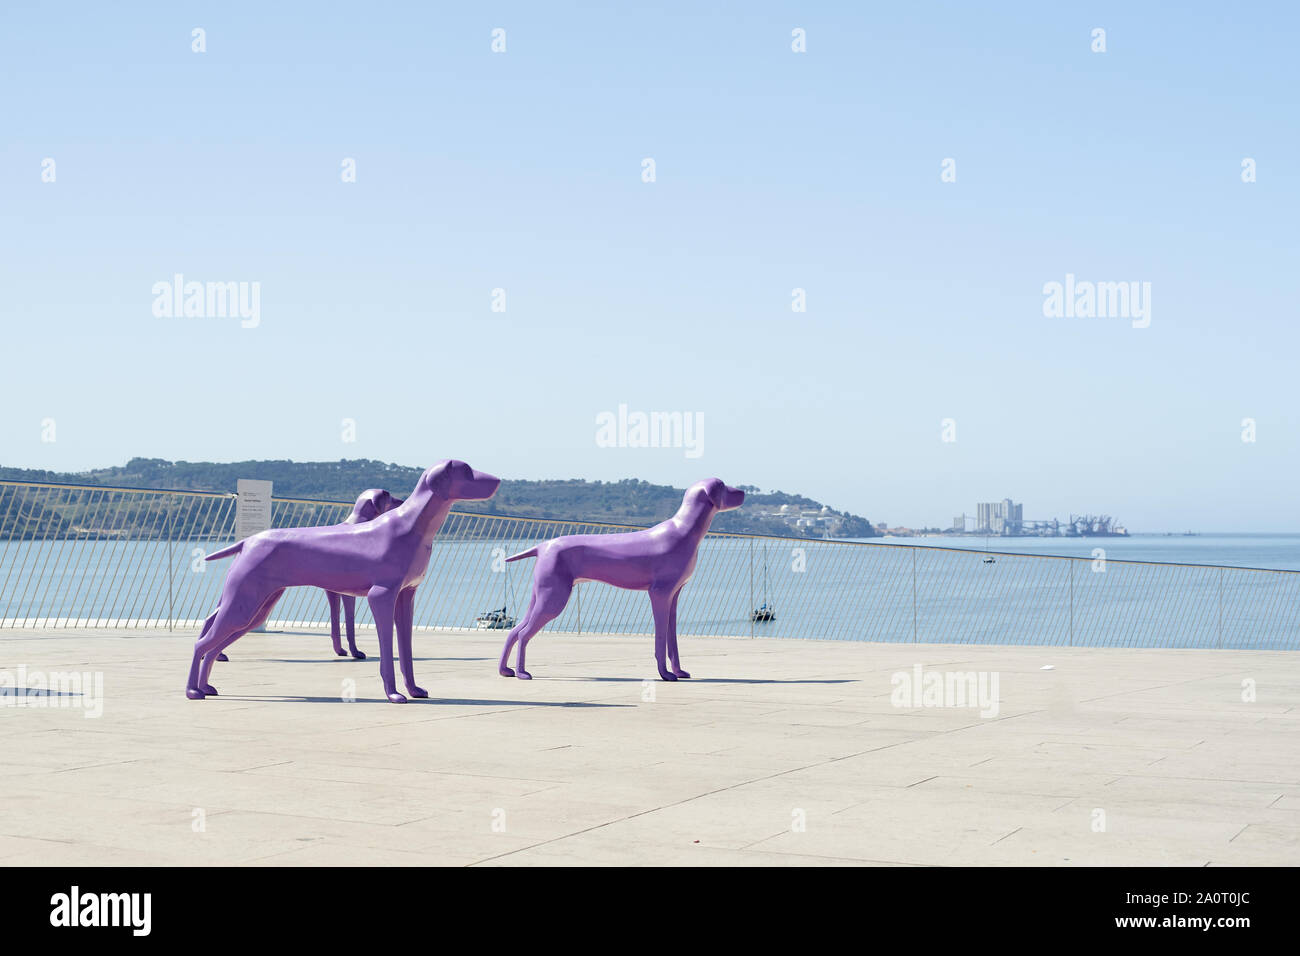 Lisbonne, Portugal - 1 septembre 2019 : groupe de sculptures en haut du musée d'art et de la technologie MAAT à Lisbonne. L'architecture créative moderne Banque D'Images